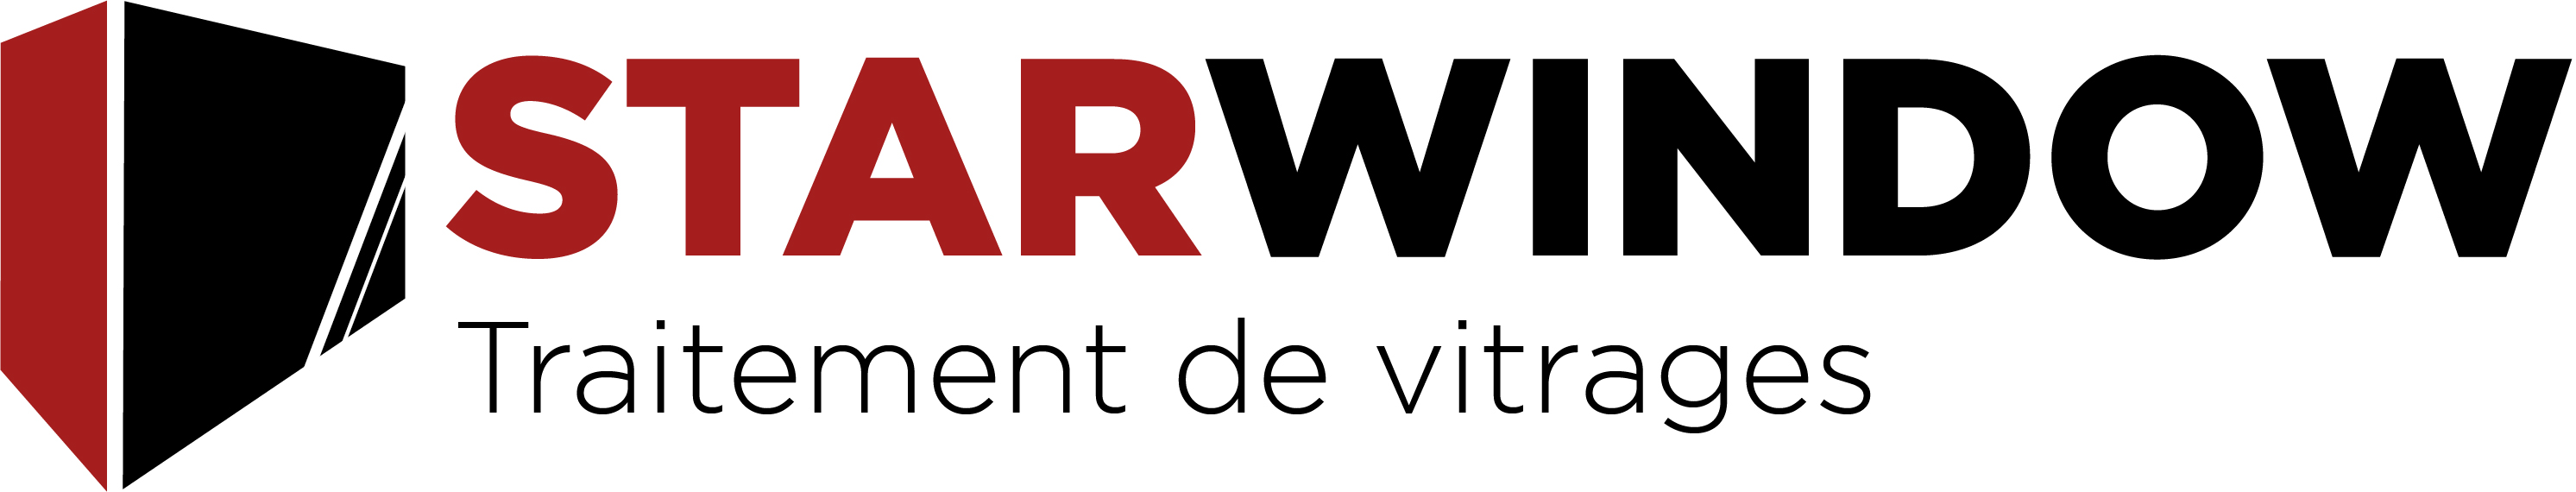 logo Starwindow